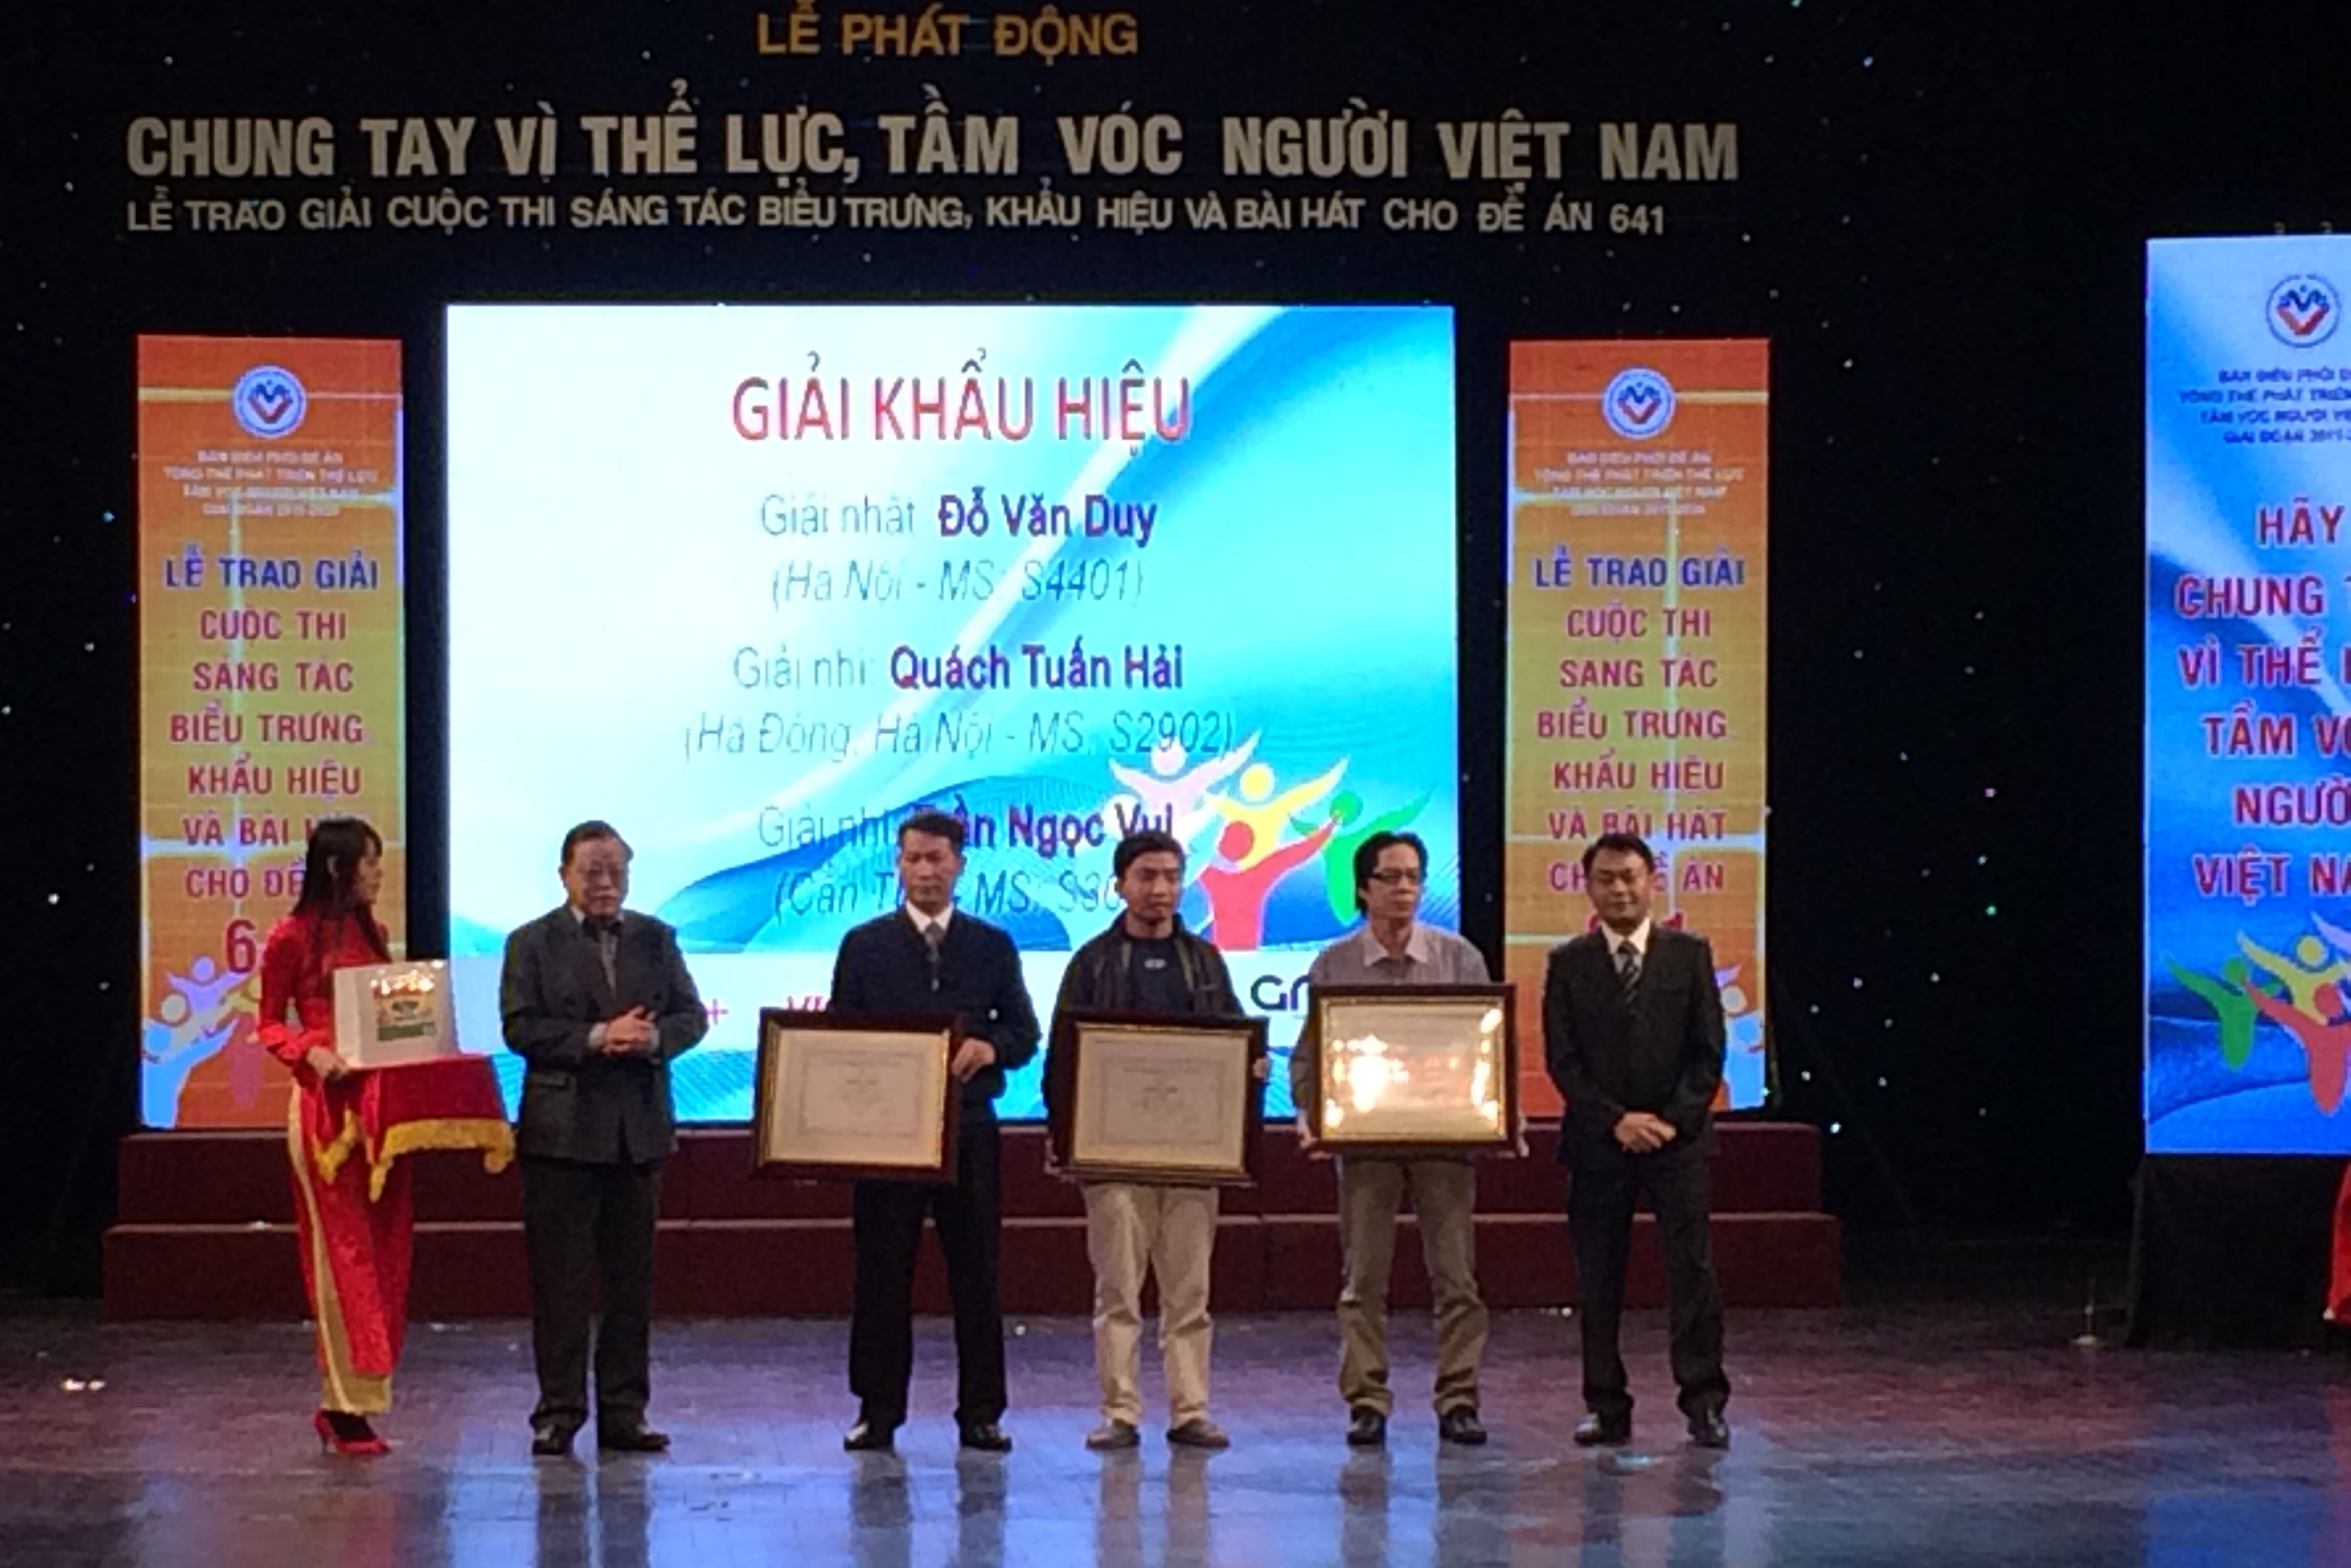 Ông Nguyễn Đức Tâm, Phó tổng giám đốc VietJetair và Ông Nguyễn Hữu Hạnh, giám đốc truyền thông của nhãn hàng Cansua 3+ trao giải Nhất và Nhì Slogan.